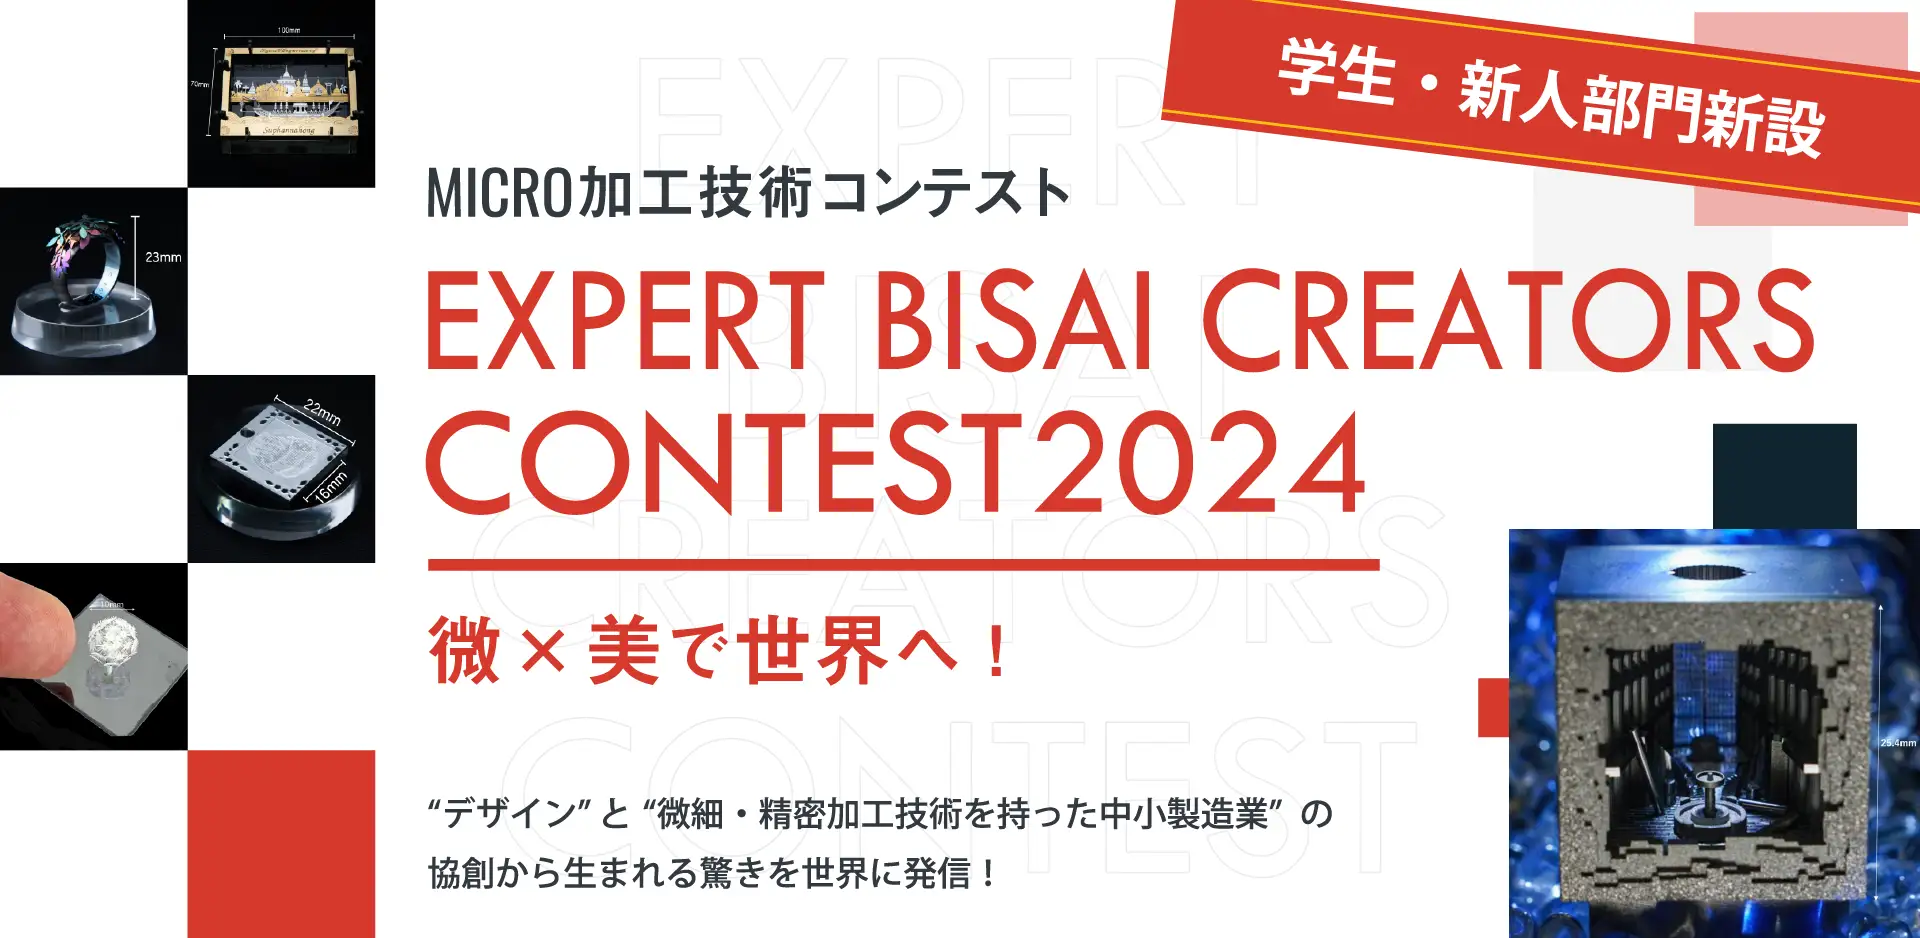 Expert Bisai Creators Contest 2024